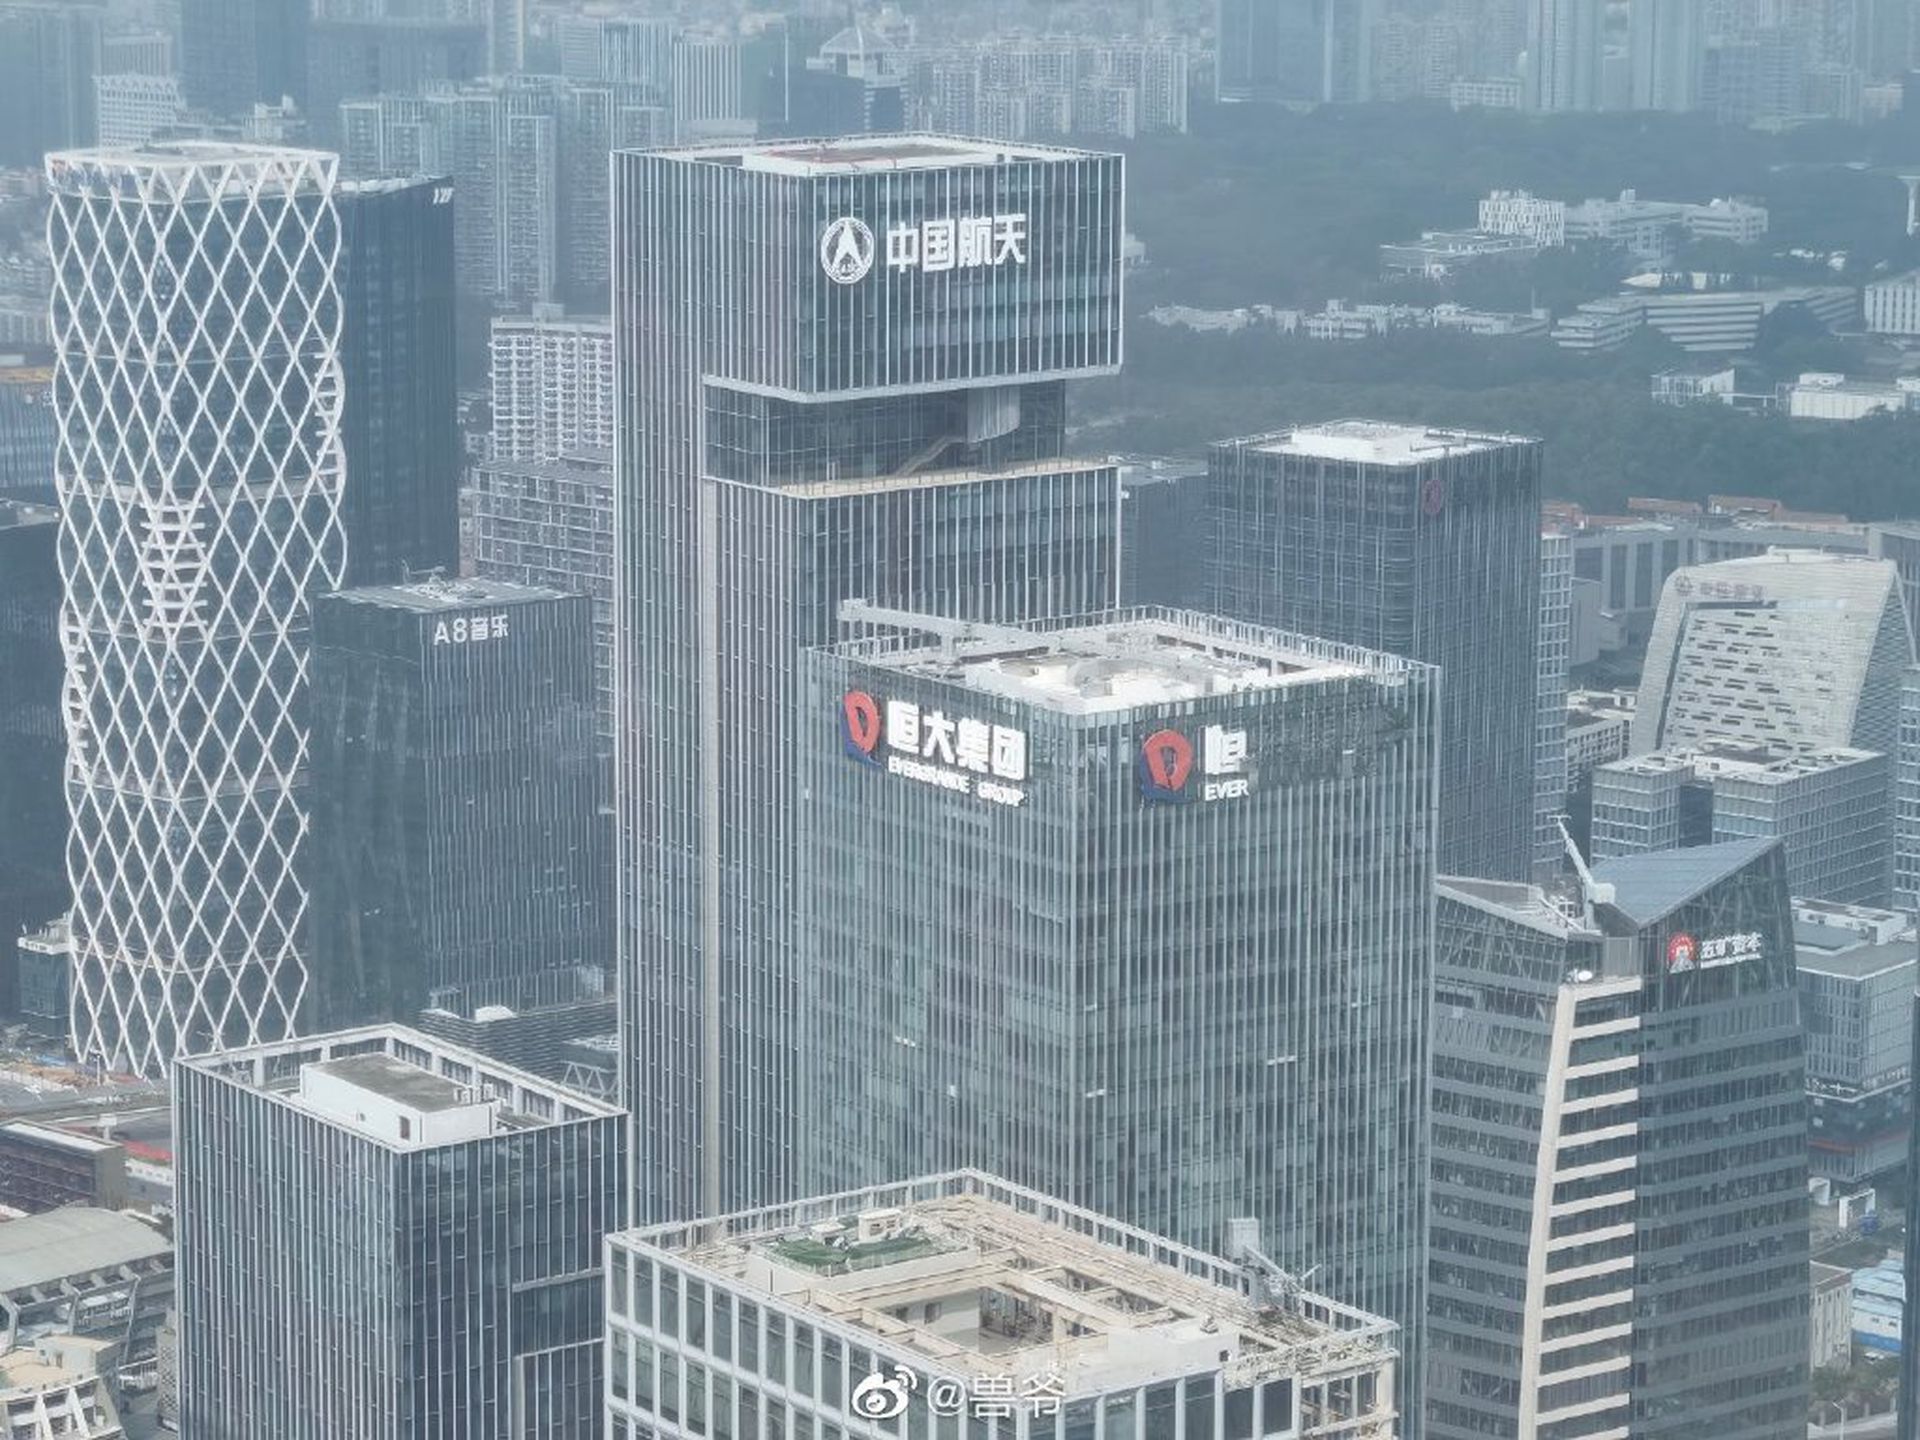 曾经位于深圳湾的恒大总部，正在拆掉楼顶的“恒大集团”的招牌。（微博@兽爷）